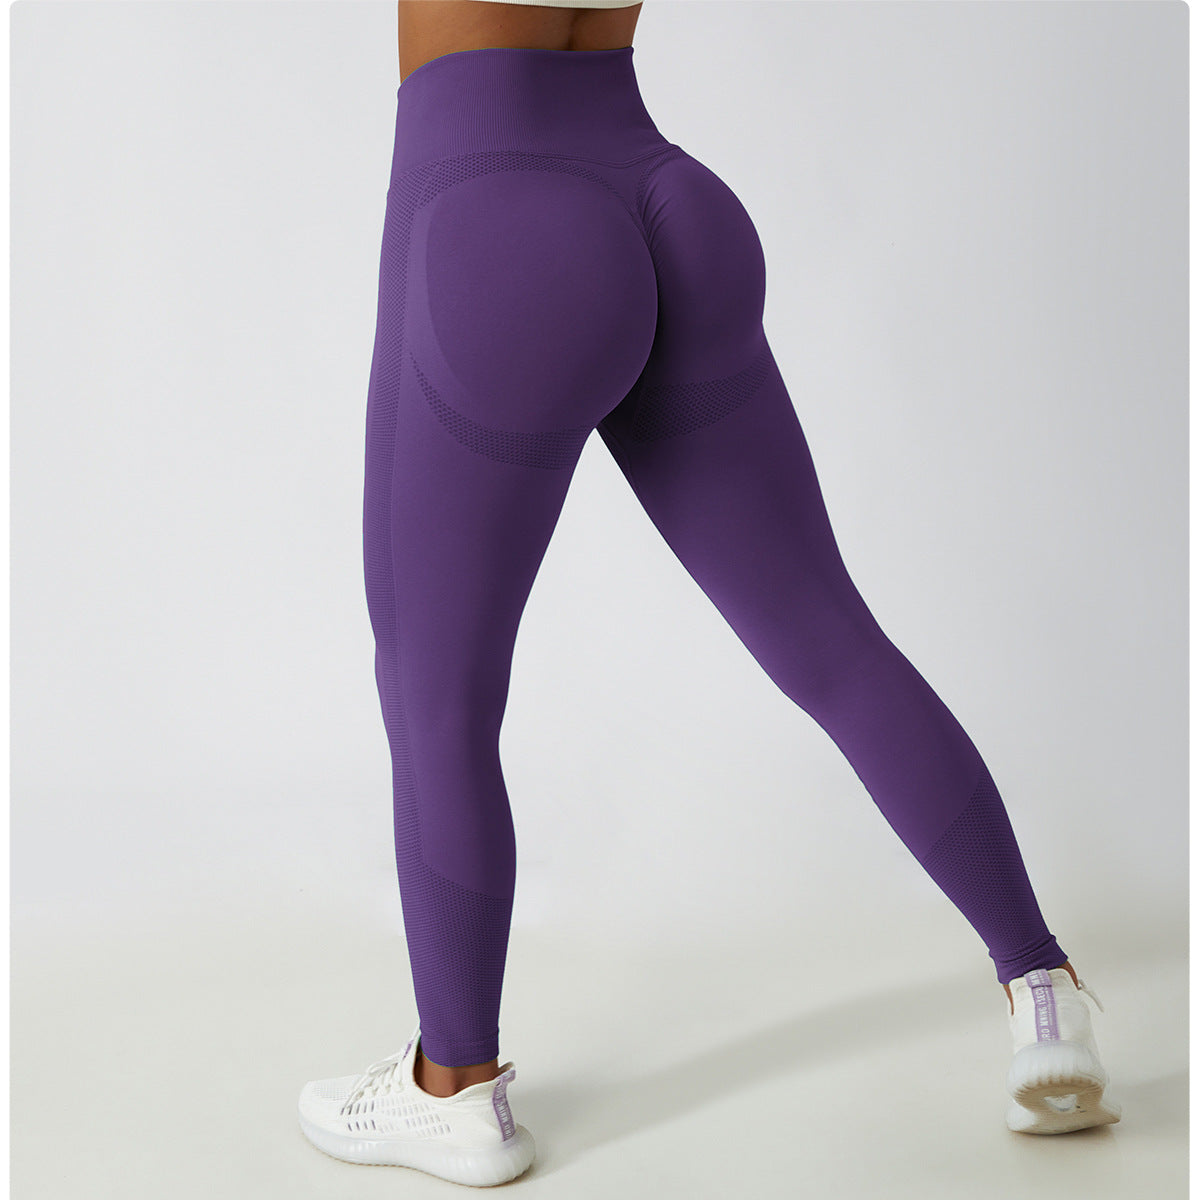 Eine Person trägt unsere Scrunch Leggings in der Farbe Purple. Die Leggings sind aus elastischem, atmungsaktivem Material und haben einen Scrunch-Effekt am Gesäß, der für eine feminine Silhouette sorgt. Ideal für jedes Workout.